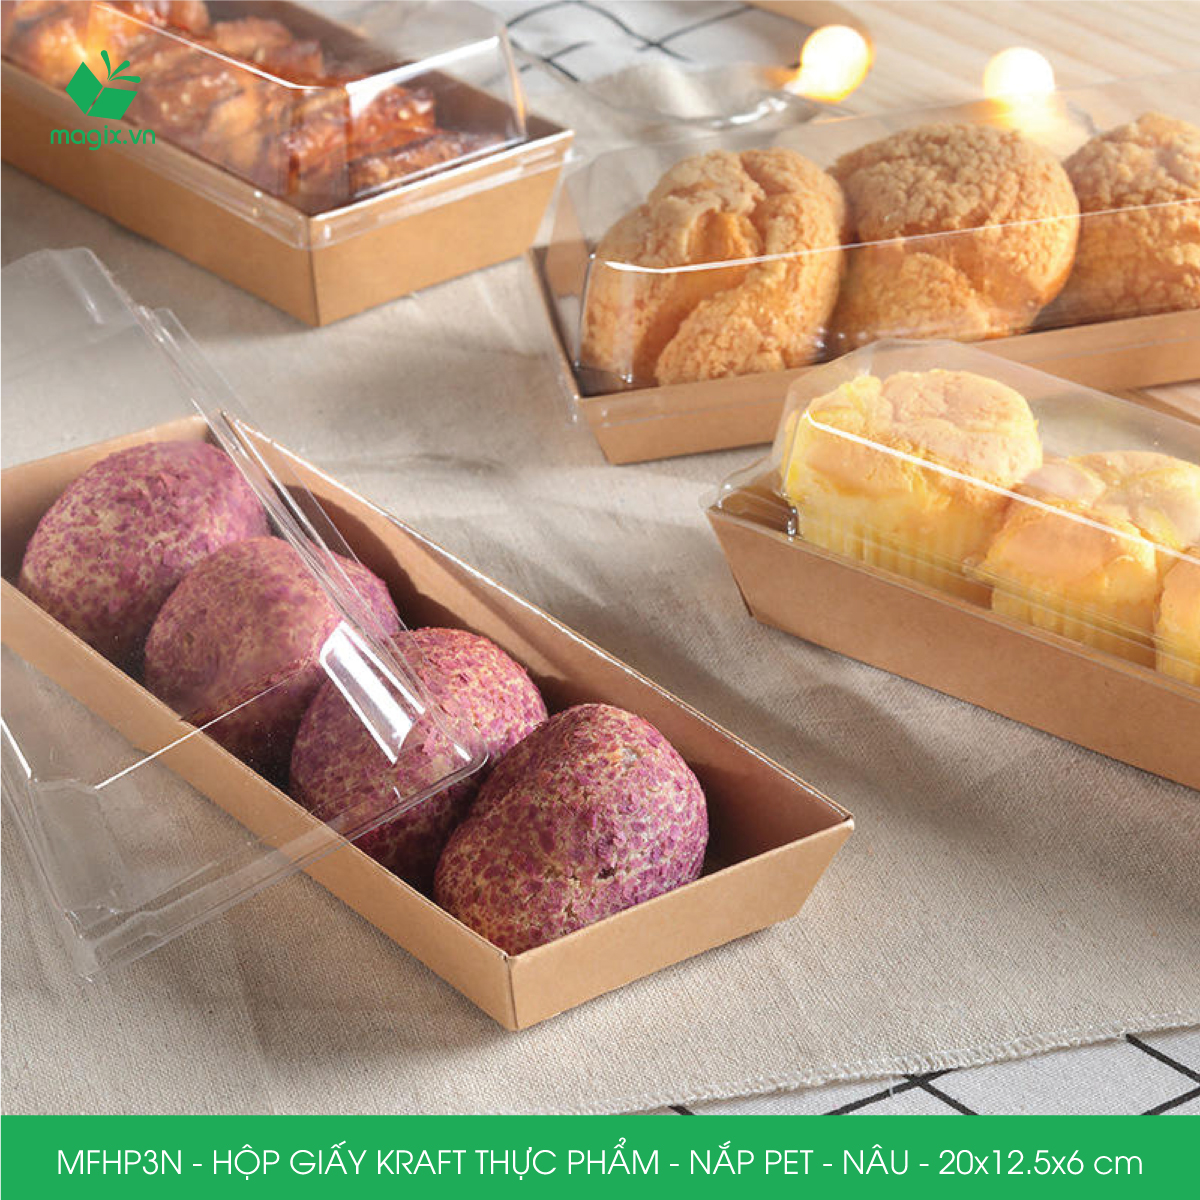 MFHP3N - 20x12.5x6 cm - 50 hộp giấy kraft thực phẩm màu nâu nắp Pet, hộp giấy chữ nhật đựng thức ăn, hộp bánh nắp trong